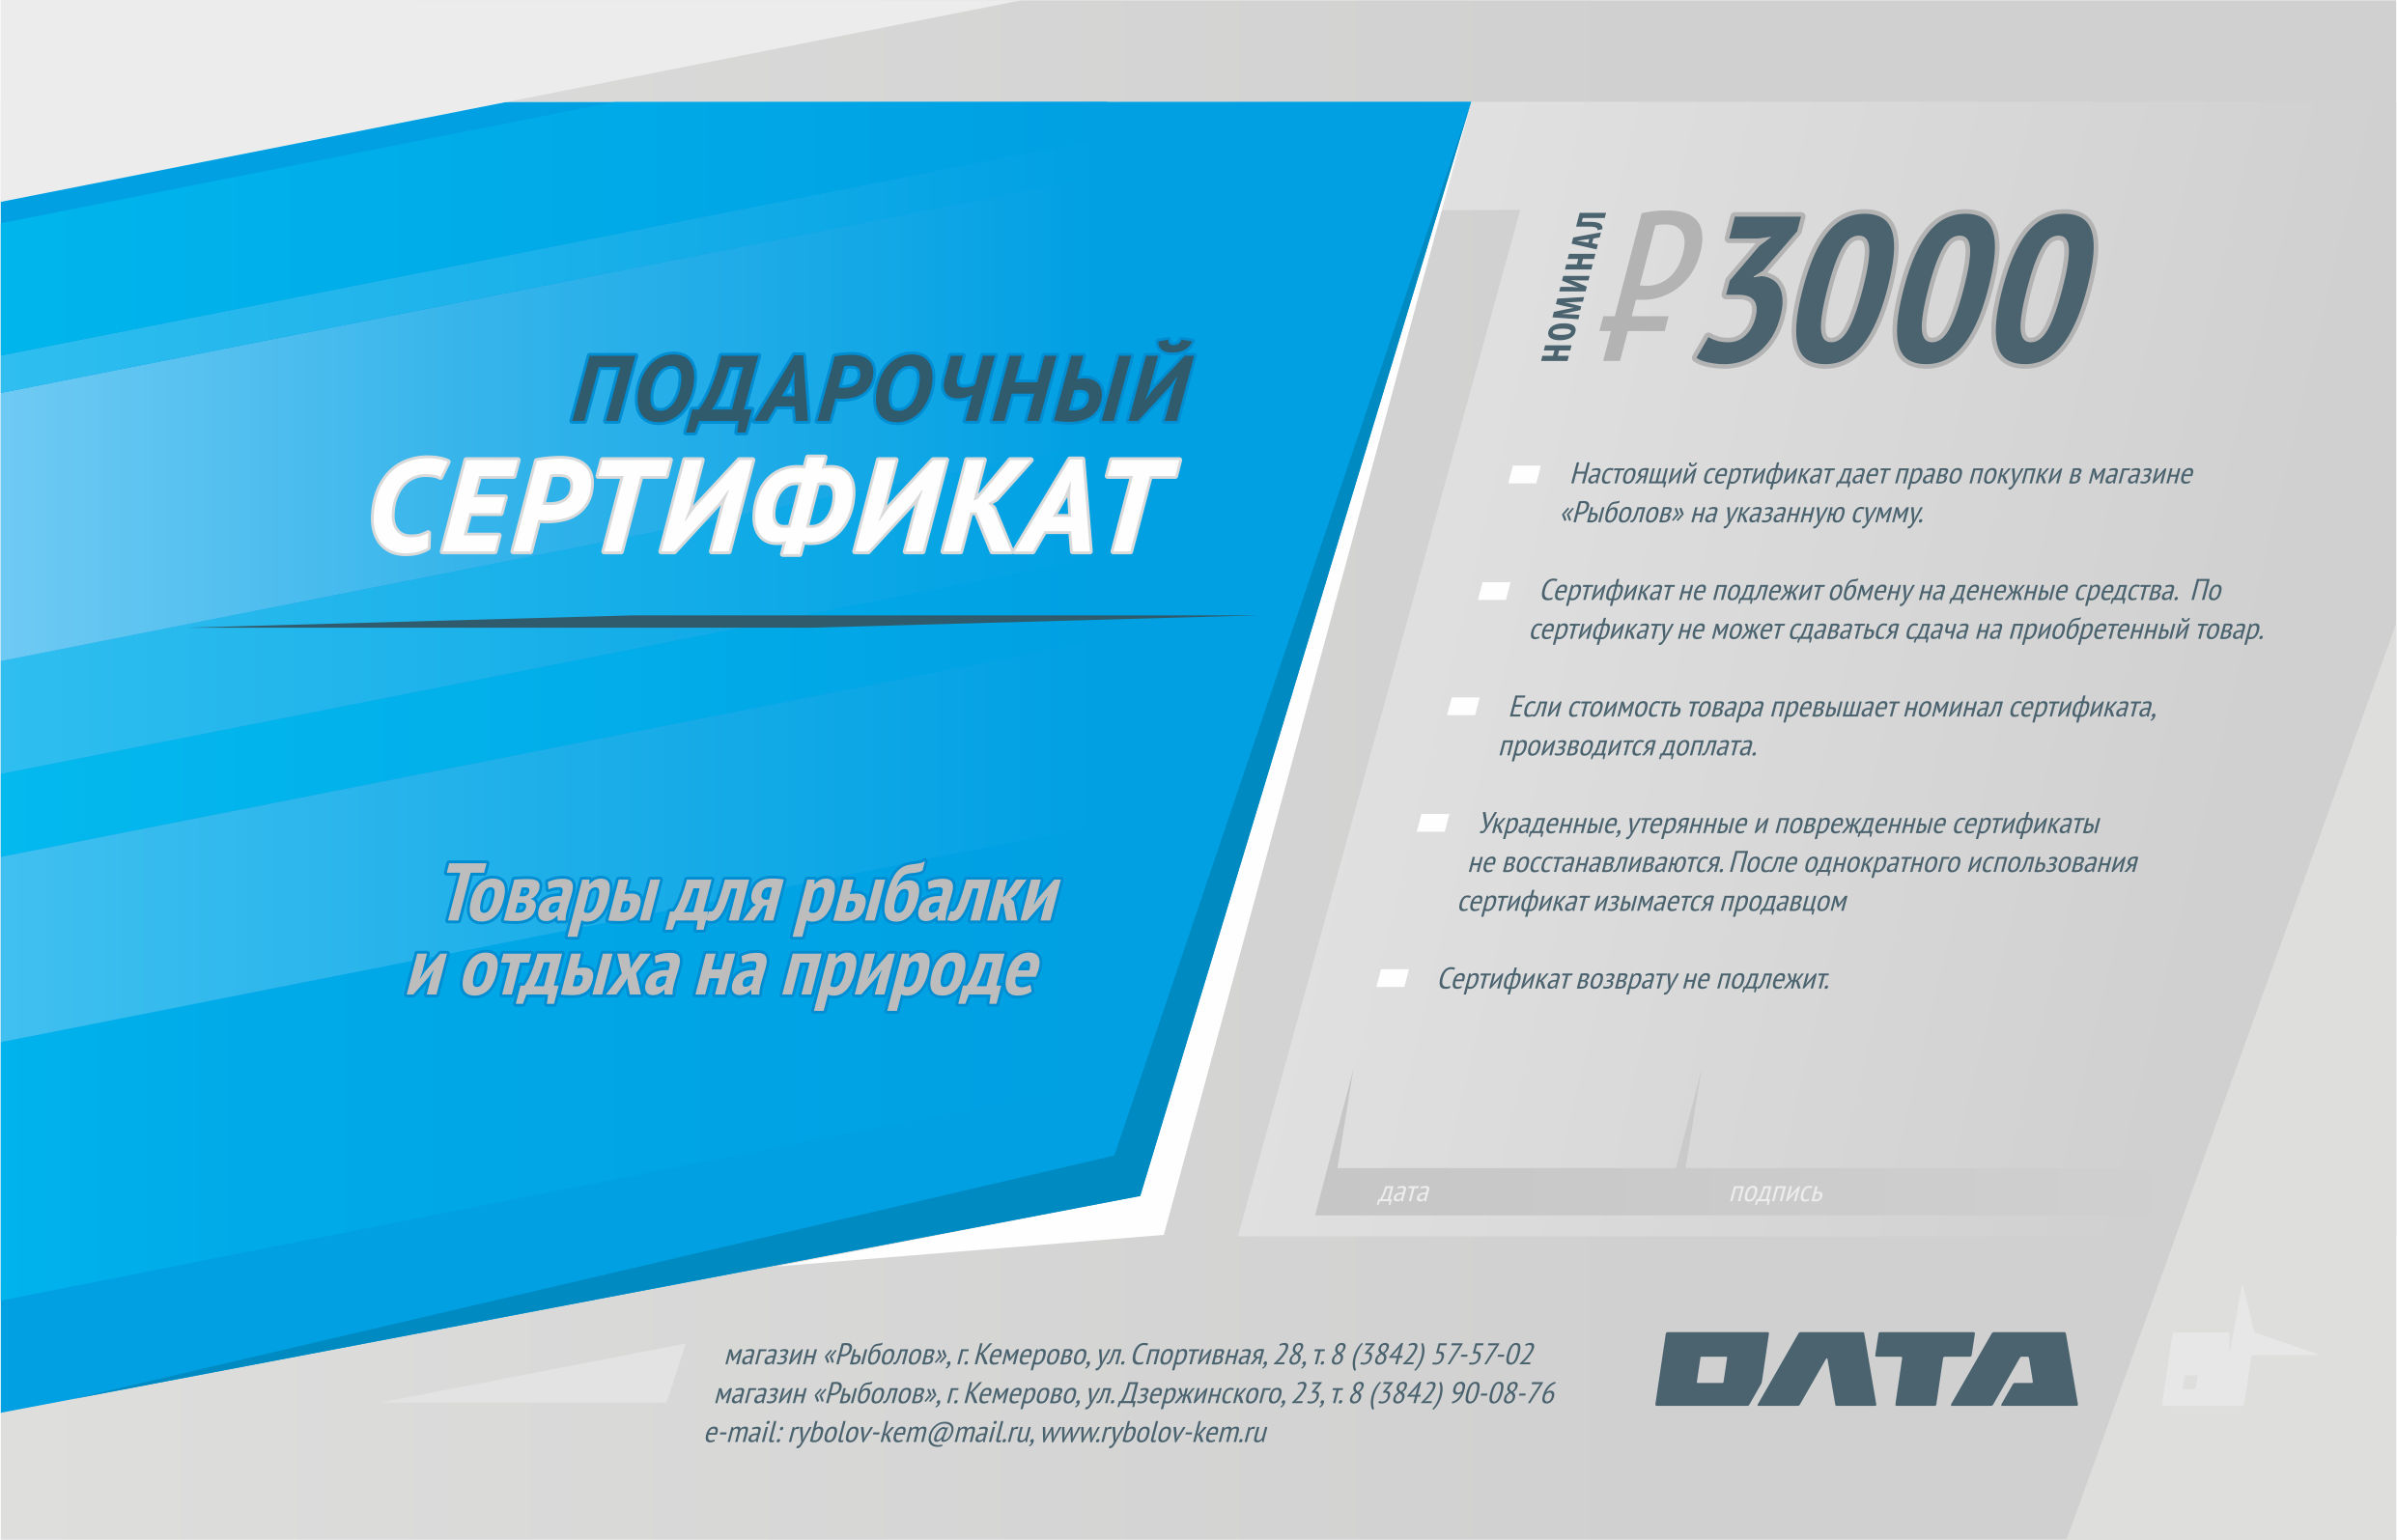 Подарочный сертификат, номинал 3000 рублей